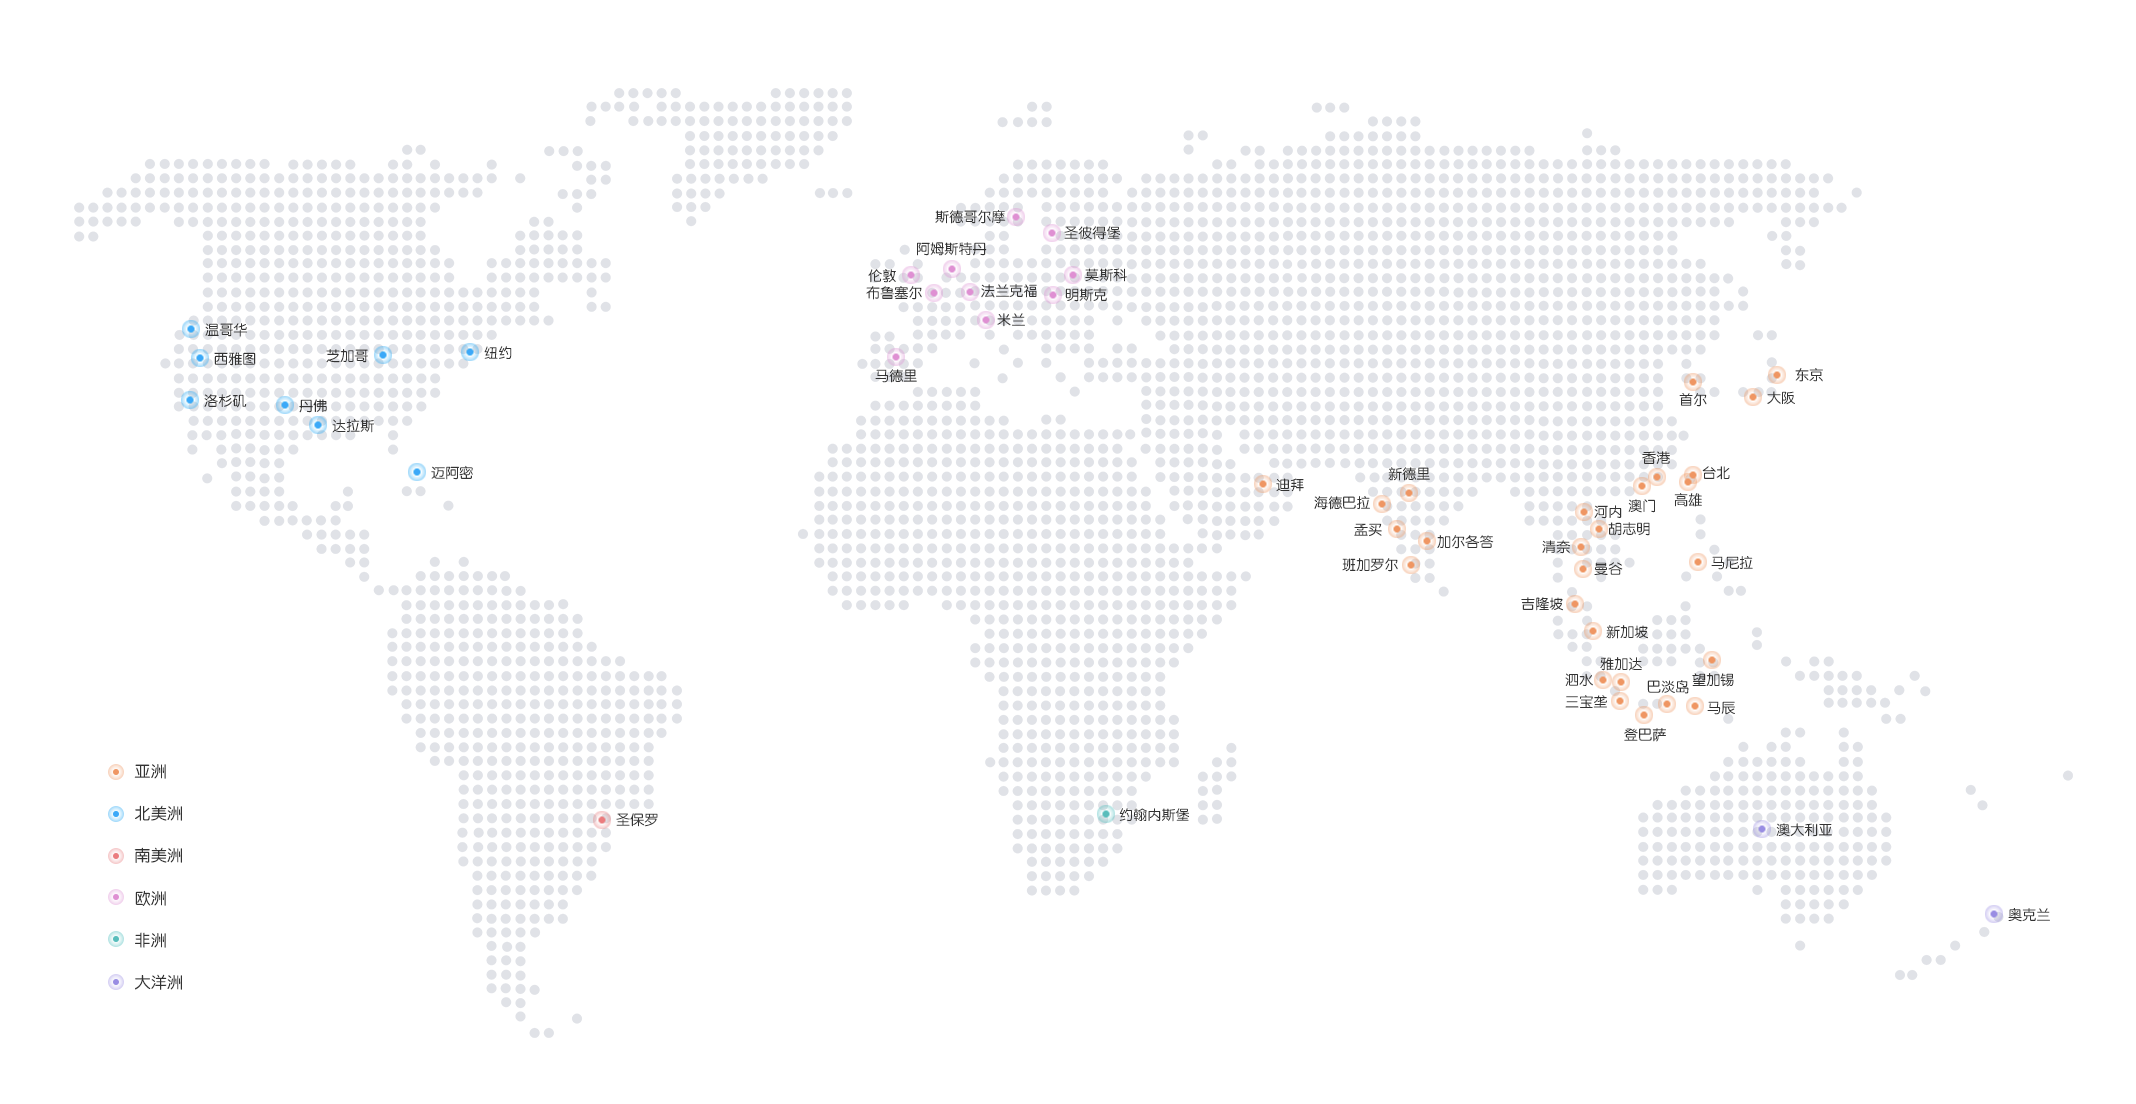 CDN全球加速让您业务遍布全球